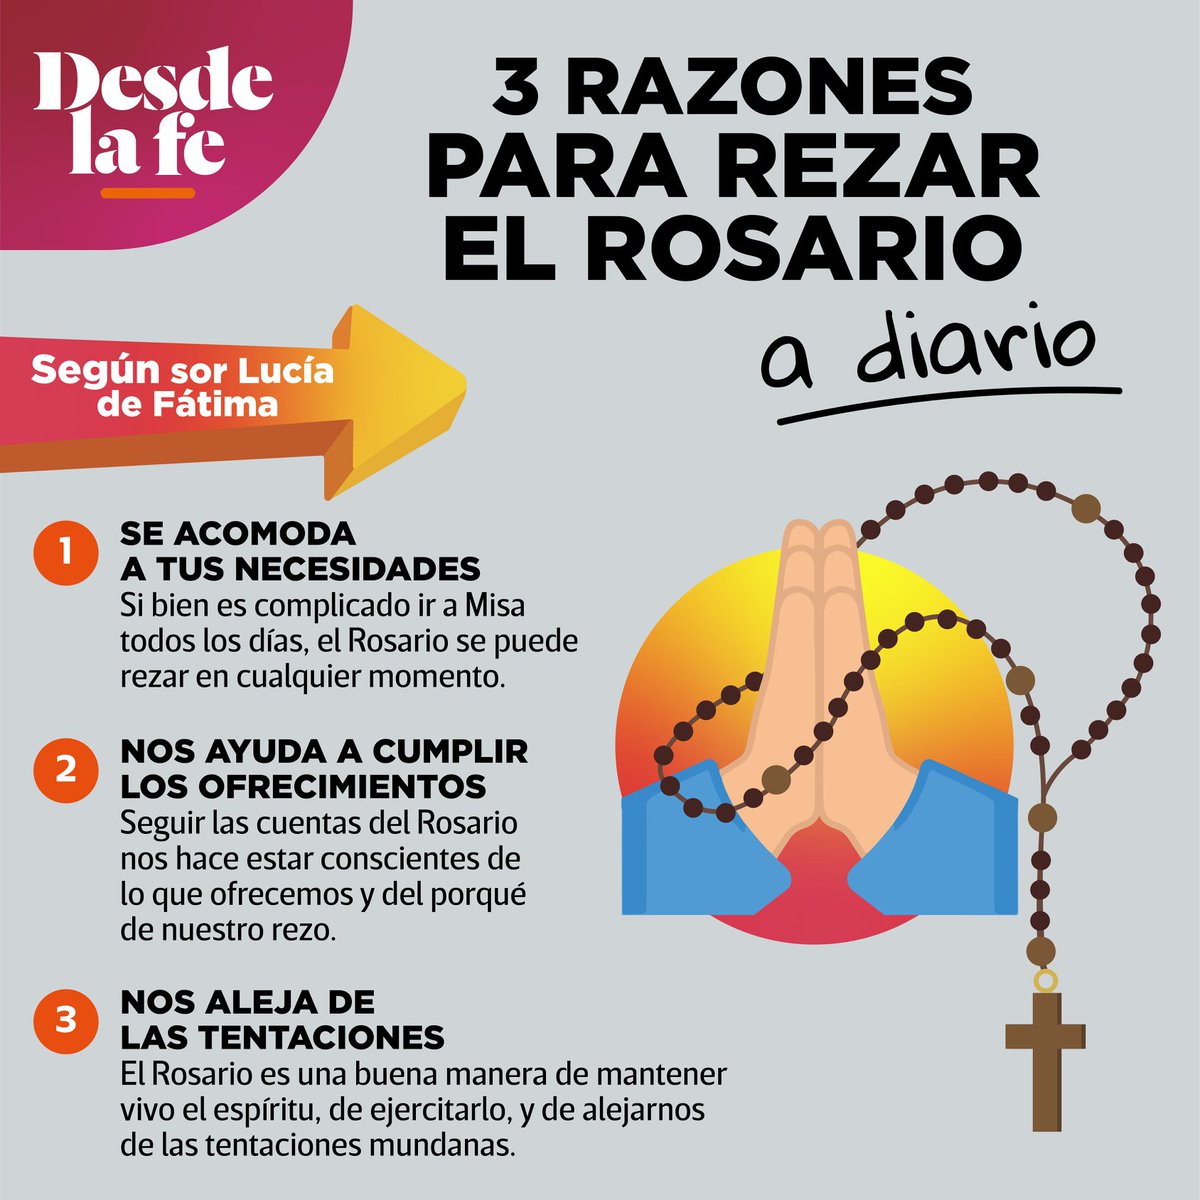 Desde la fe on Twitter: &quot;¿Qué otra razón tienes para rezar el Rosario? #MesDelRosario Lee la nota completa haciendo clic en el link ?https://t.co/Y8aTY5Ehj7 https://t.co/7lXhHa0ZLx&quot; / Twitter